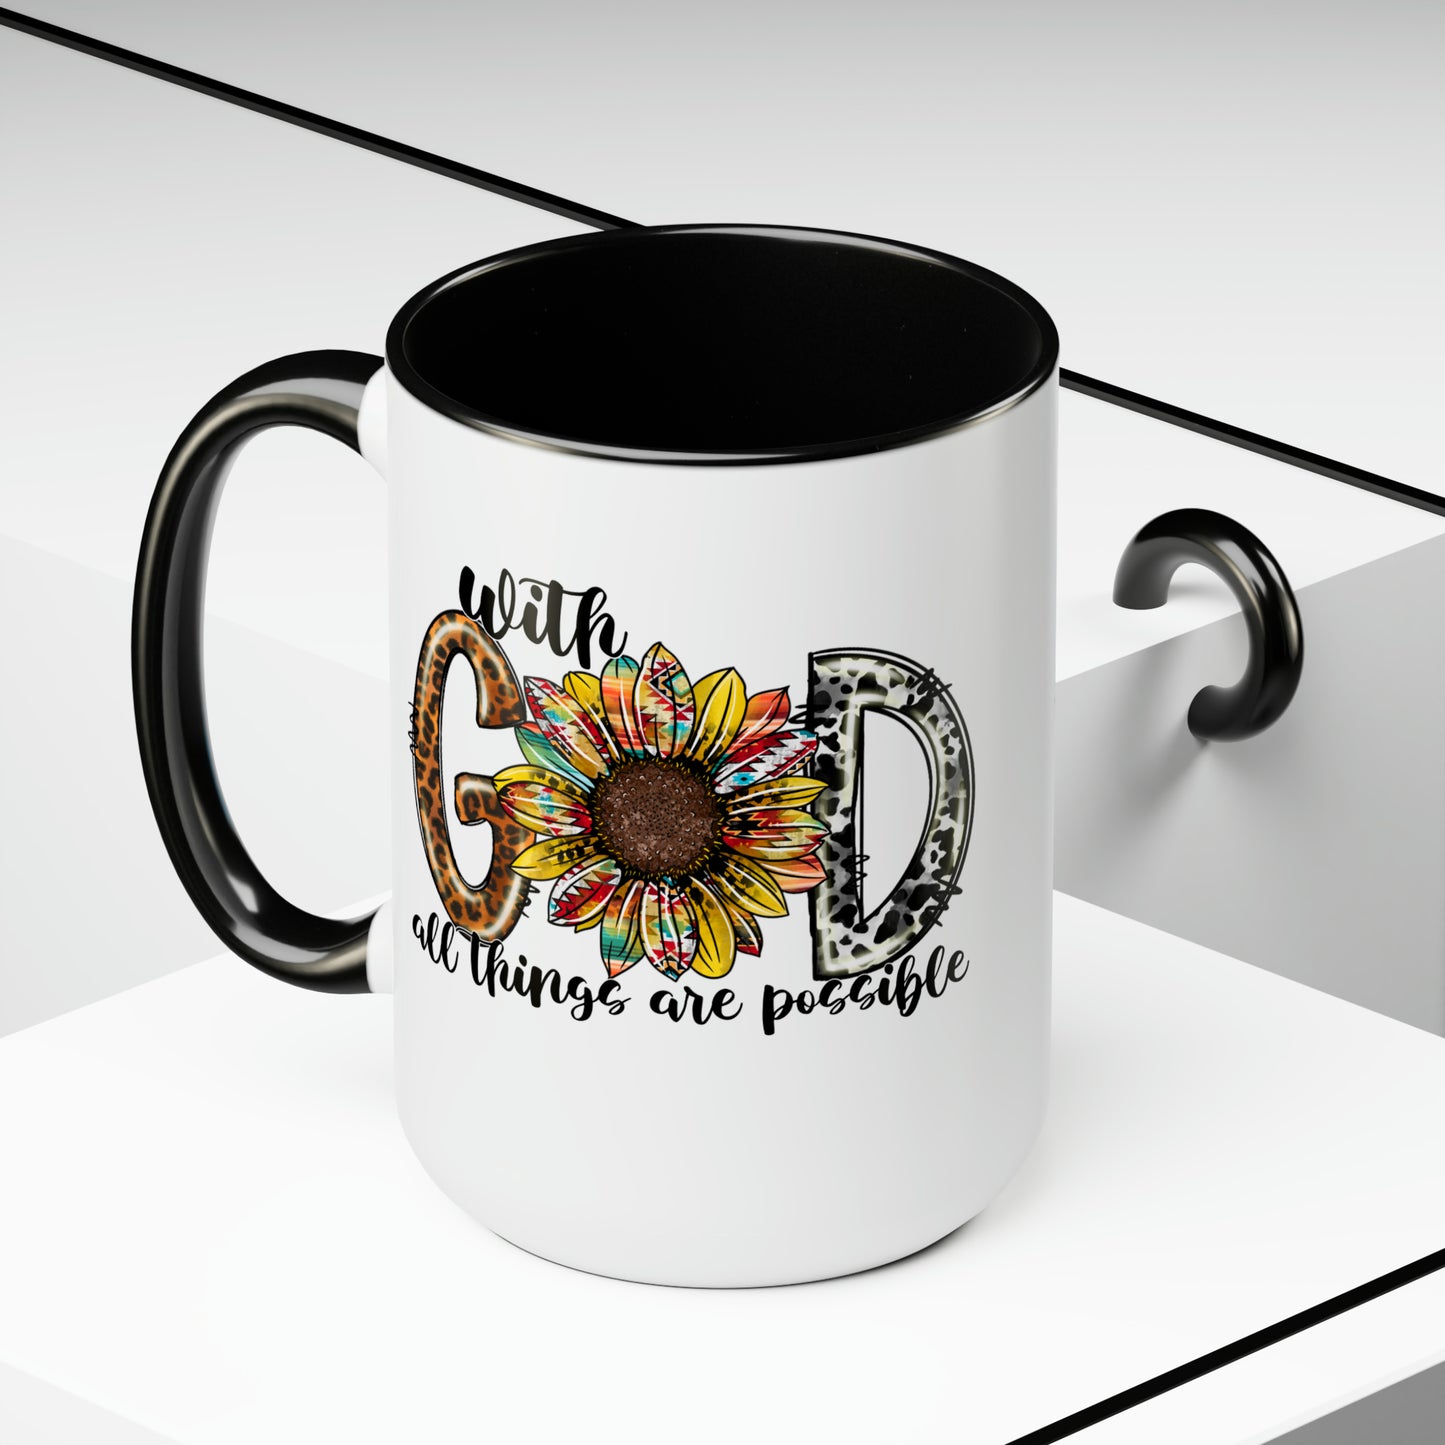 With God All Things Are Possible Two-Tone Coffee Mugs 15oz, Inspirational Mug, Coffee Mug, Gifts, Religious Mug, Sunflower Mug, Teacher Gift